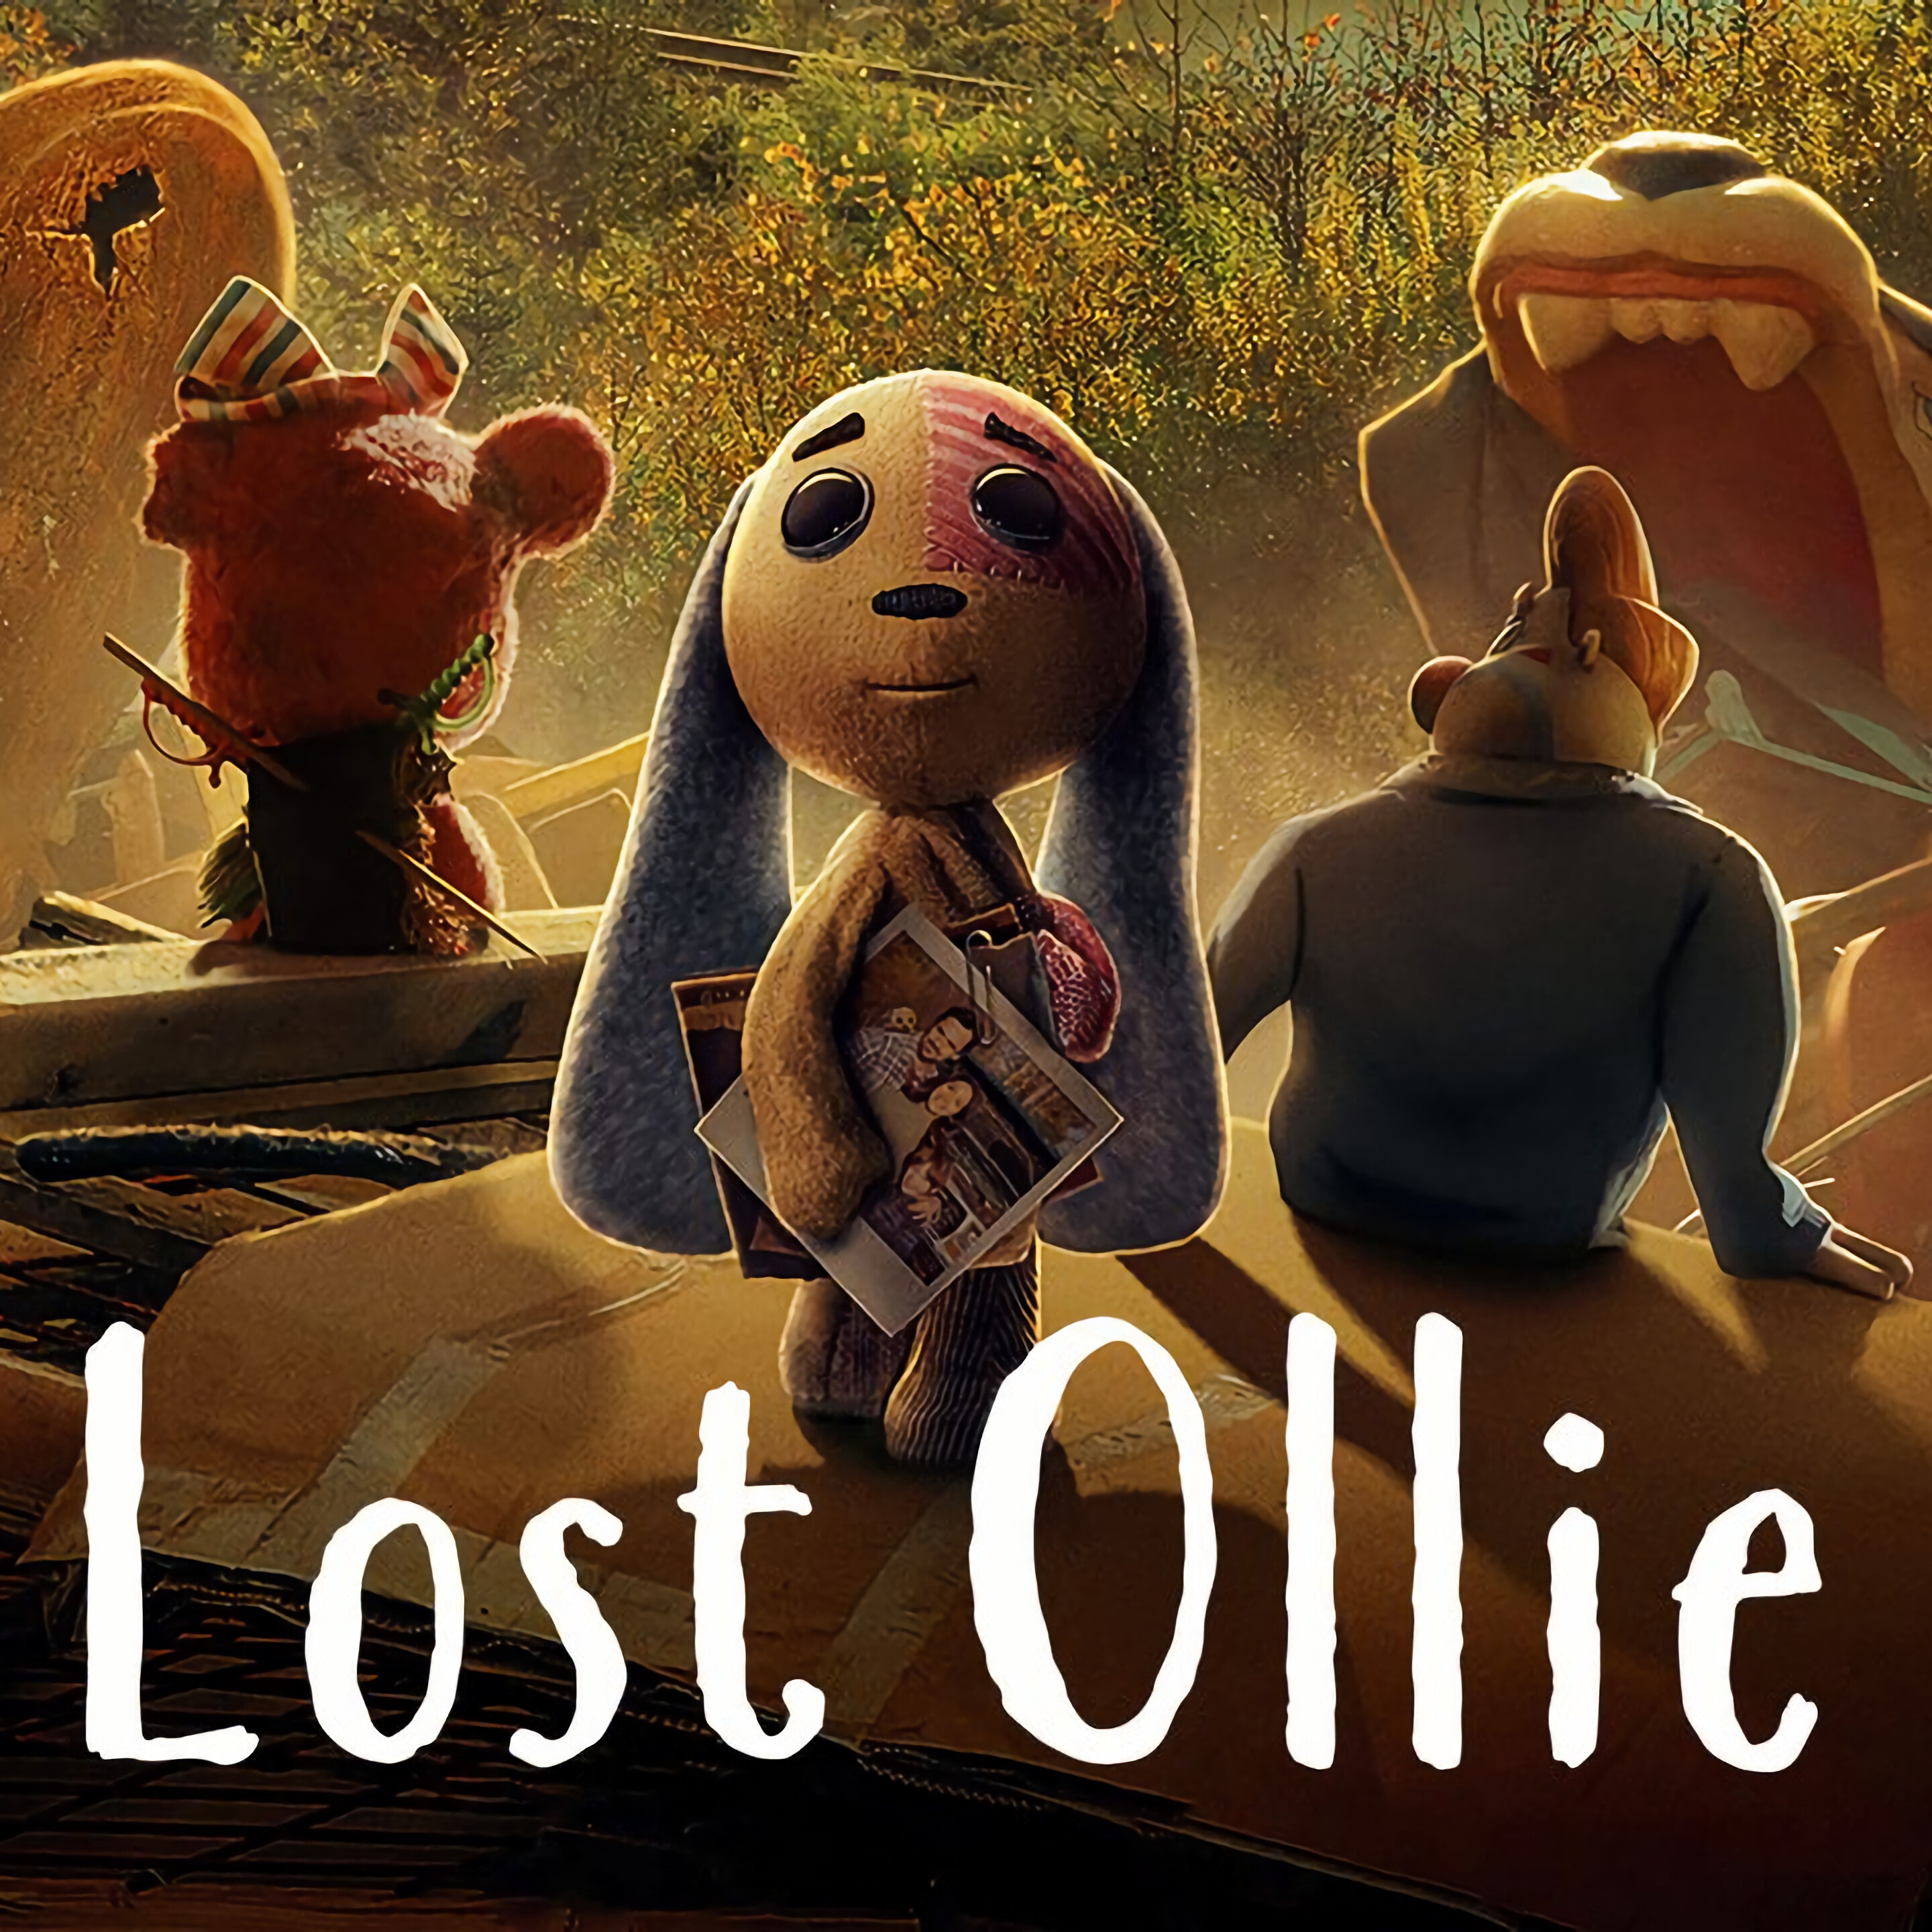 Lost Ollie series, Enchanting adventures, Emotional depth, Inspiring storytelling, 2880x2880 4K Handy